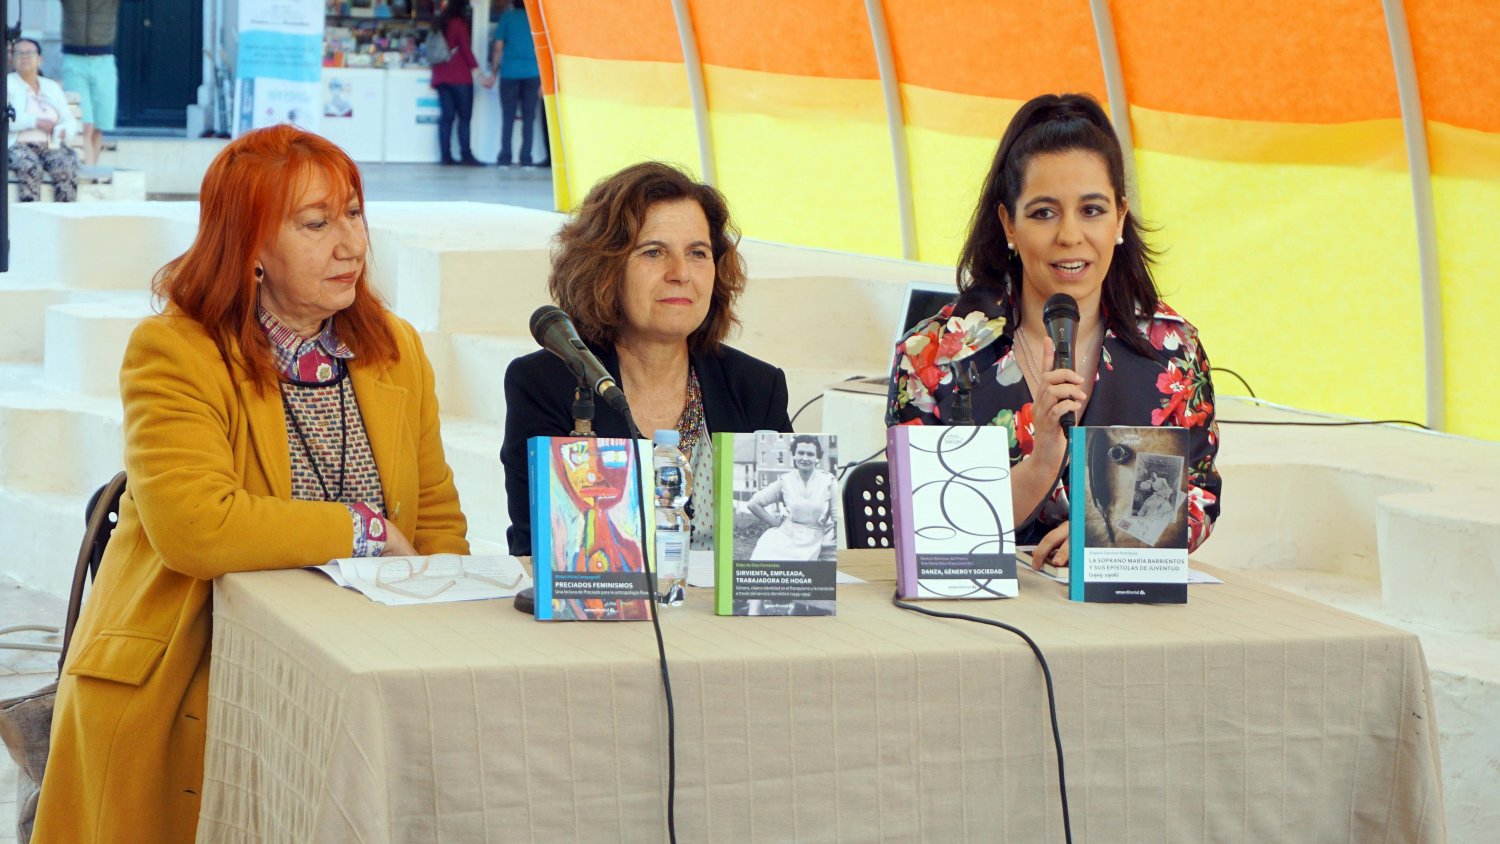 La Universidad de Málaga presenta las novedades de la colección 'Atenea' en la Feria del Libro